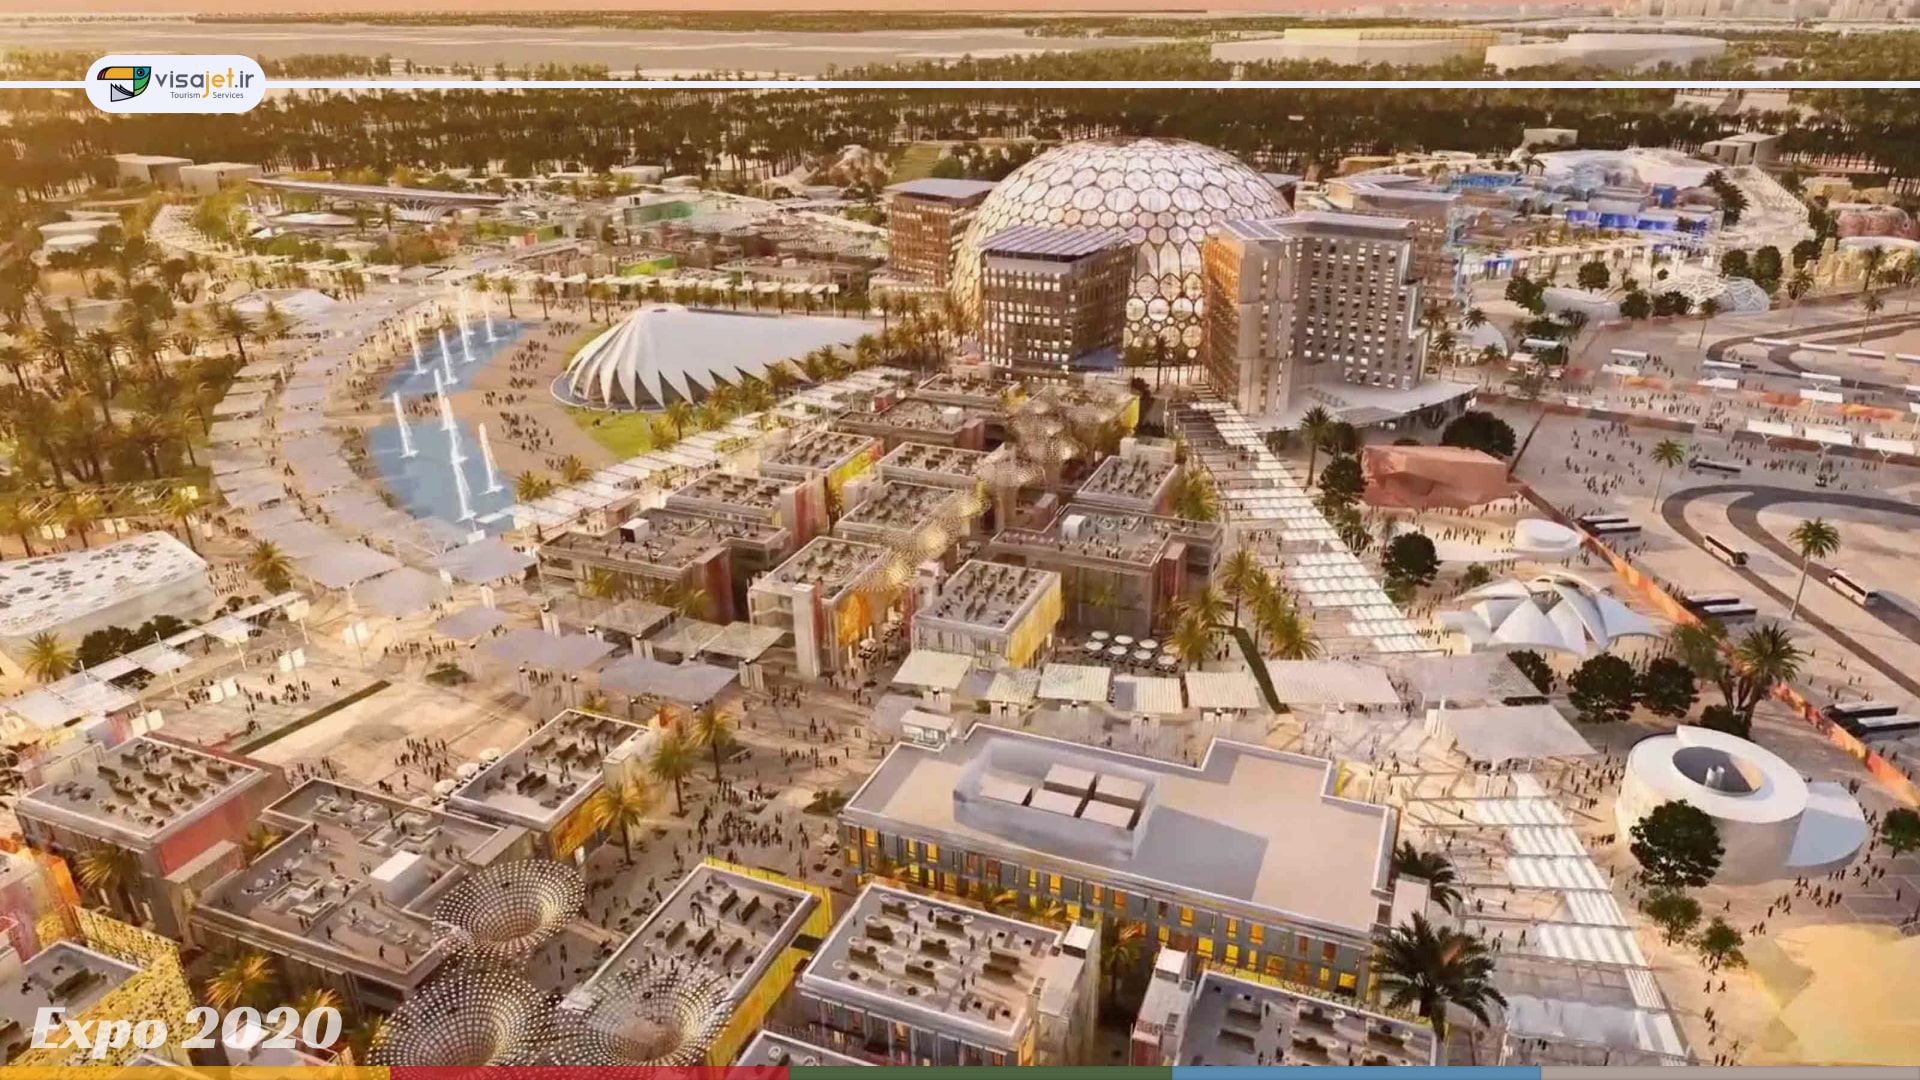 نمایشگاه Expo 2020 دبی